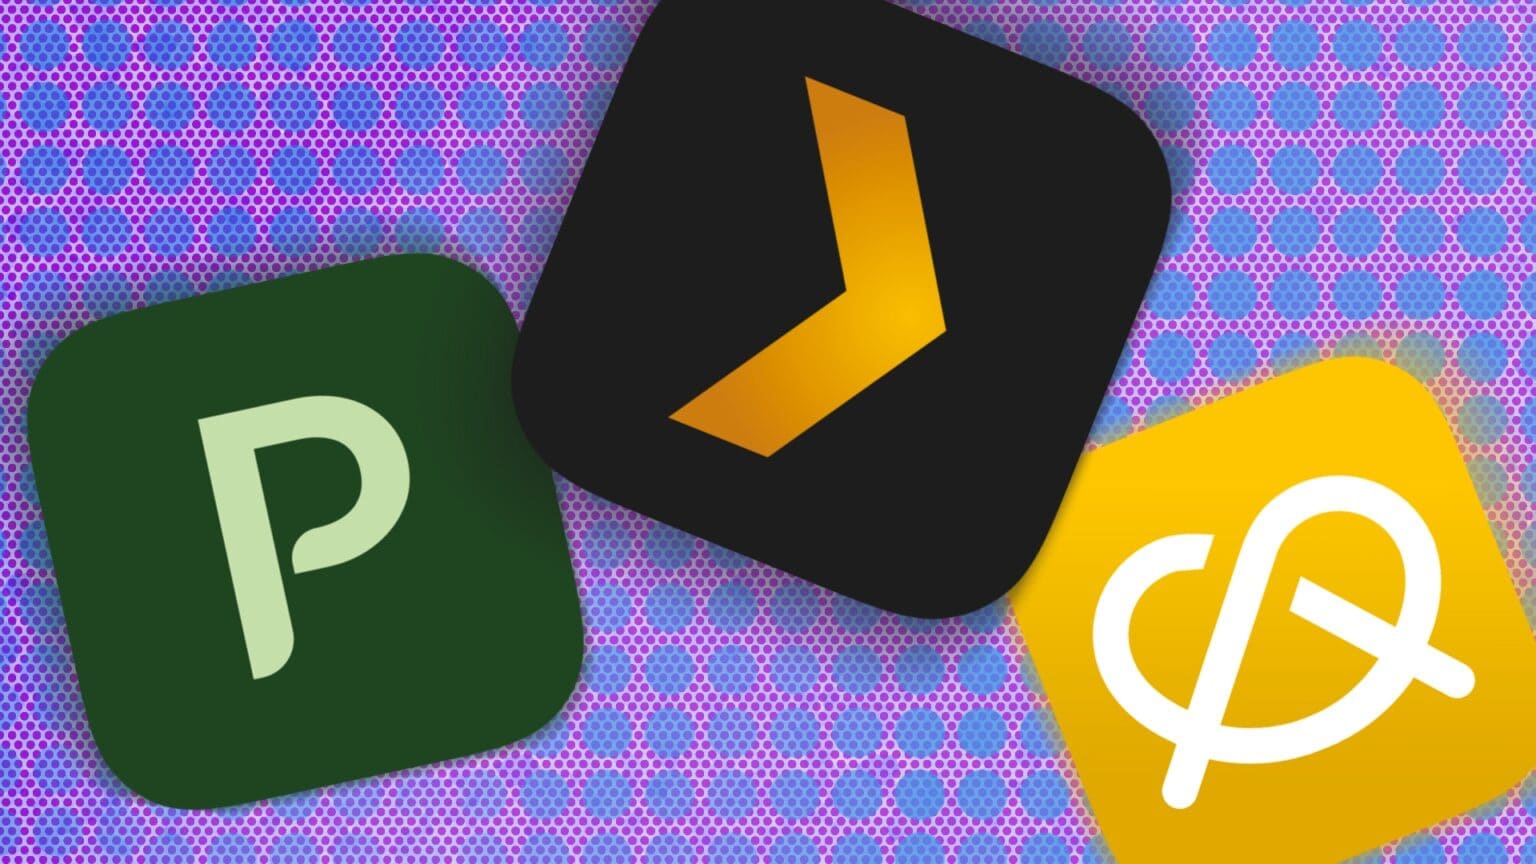 Planta, Plex, and Pretzel app icons